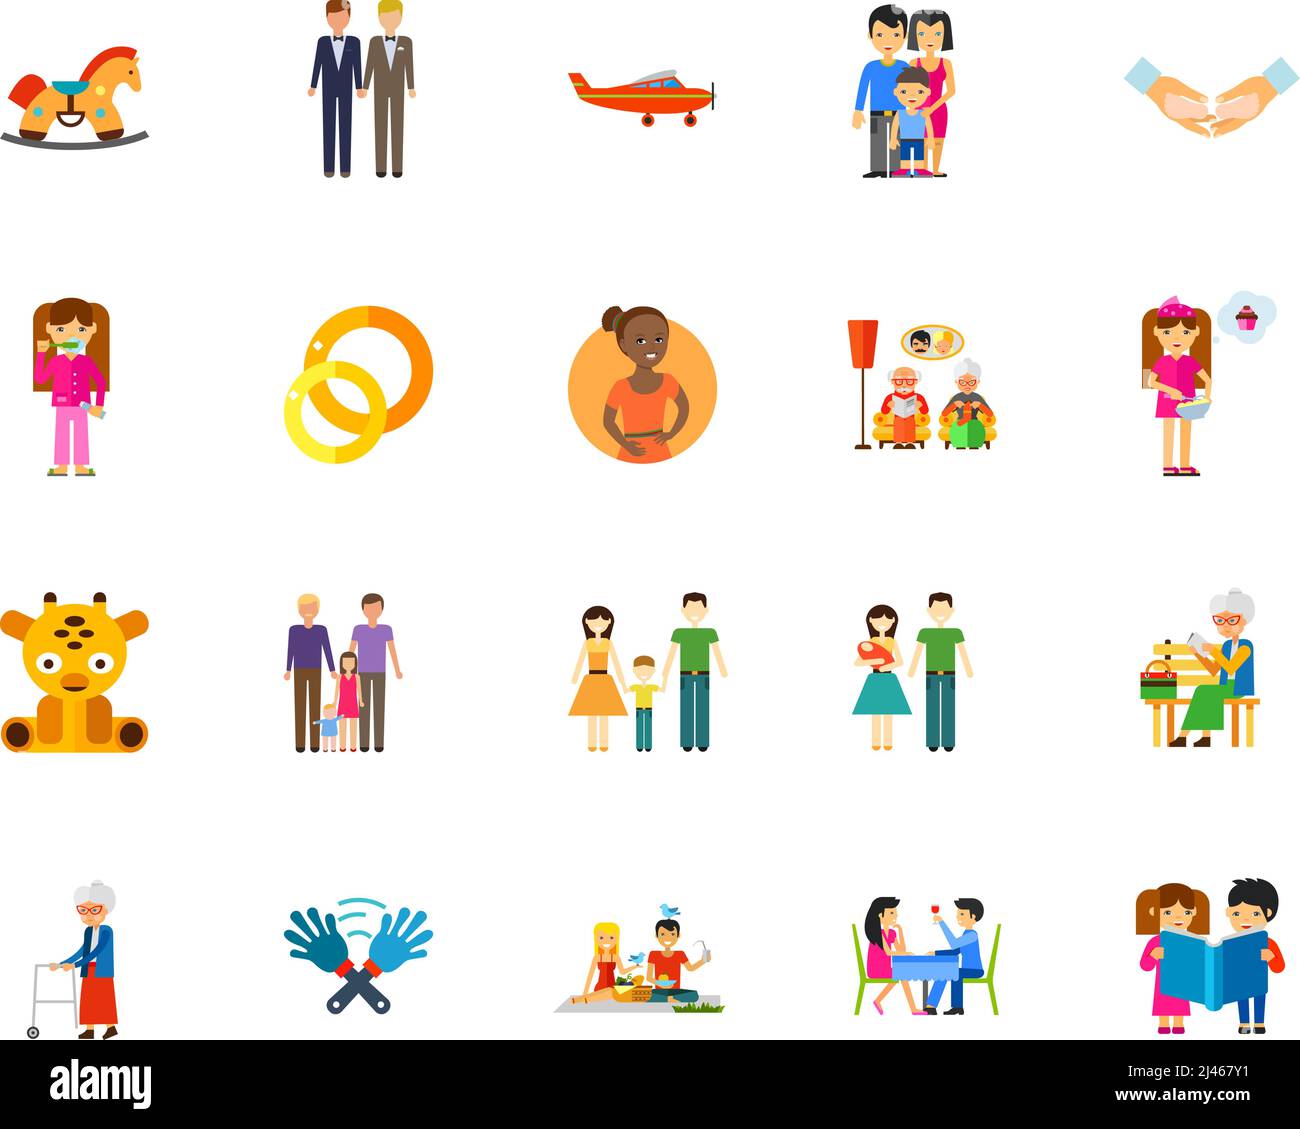 Ensemble d'icônes de famille. Peut être utilisé pour des sujets comme la parentalité, les soins, l'amour, le mariage Illustration de Vecteur